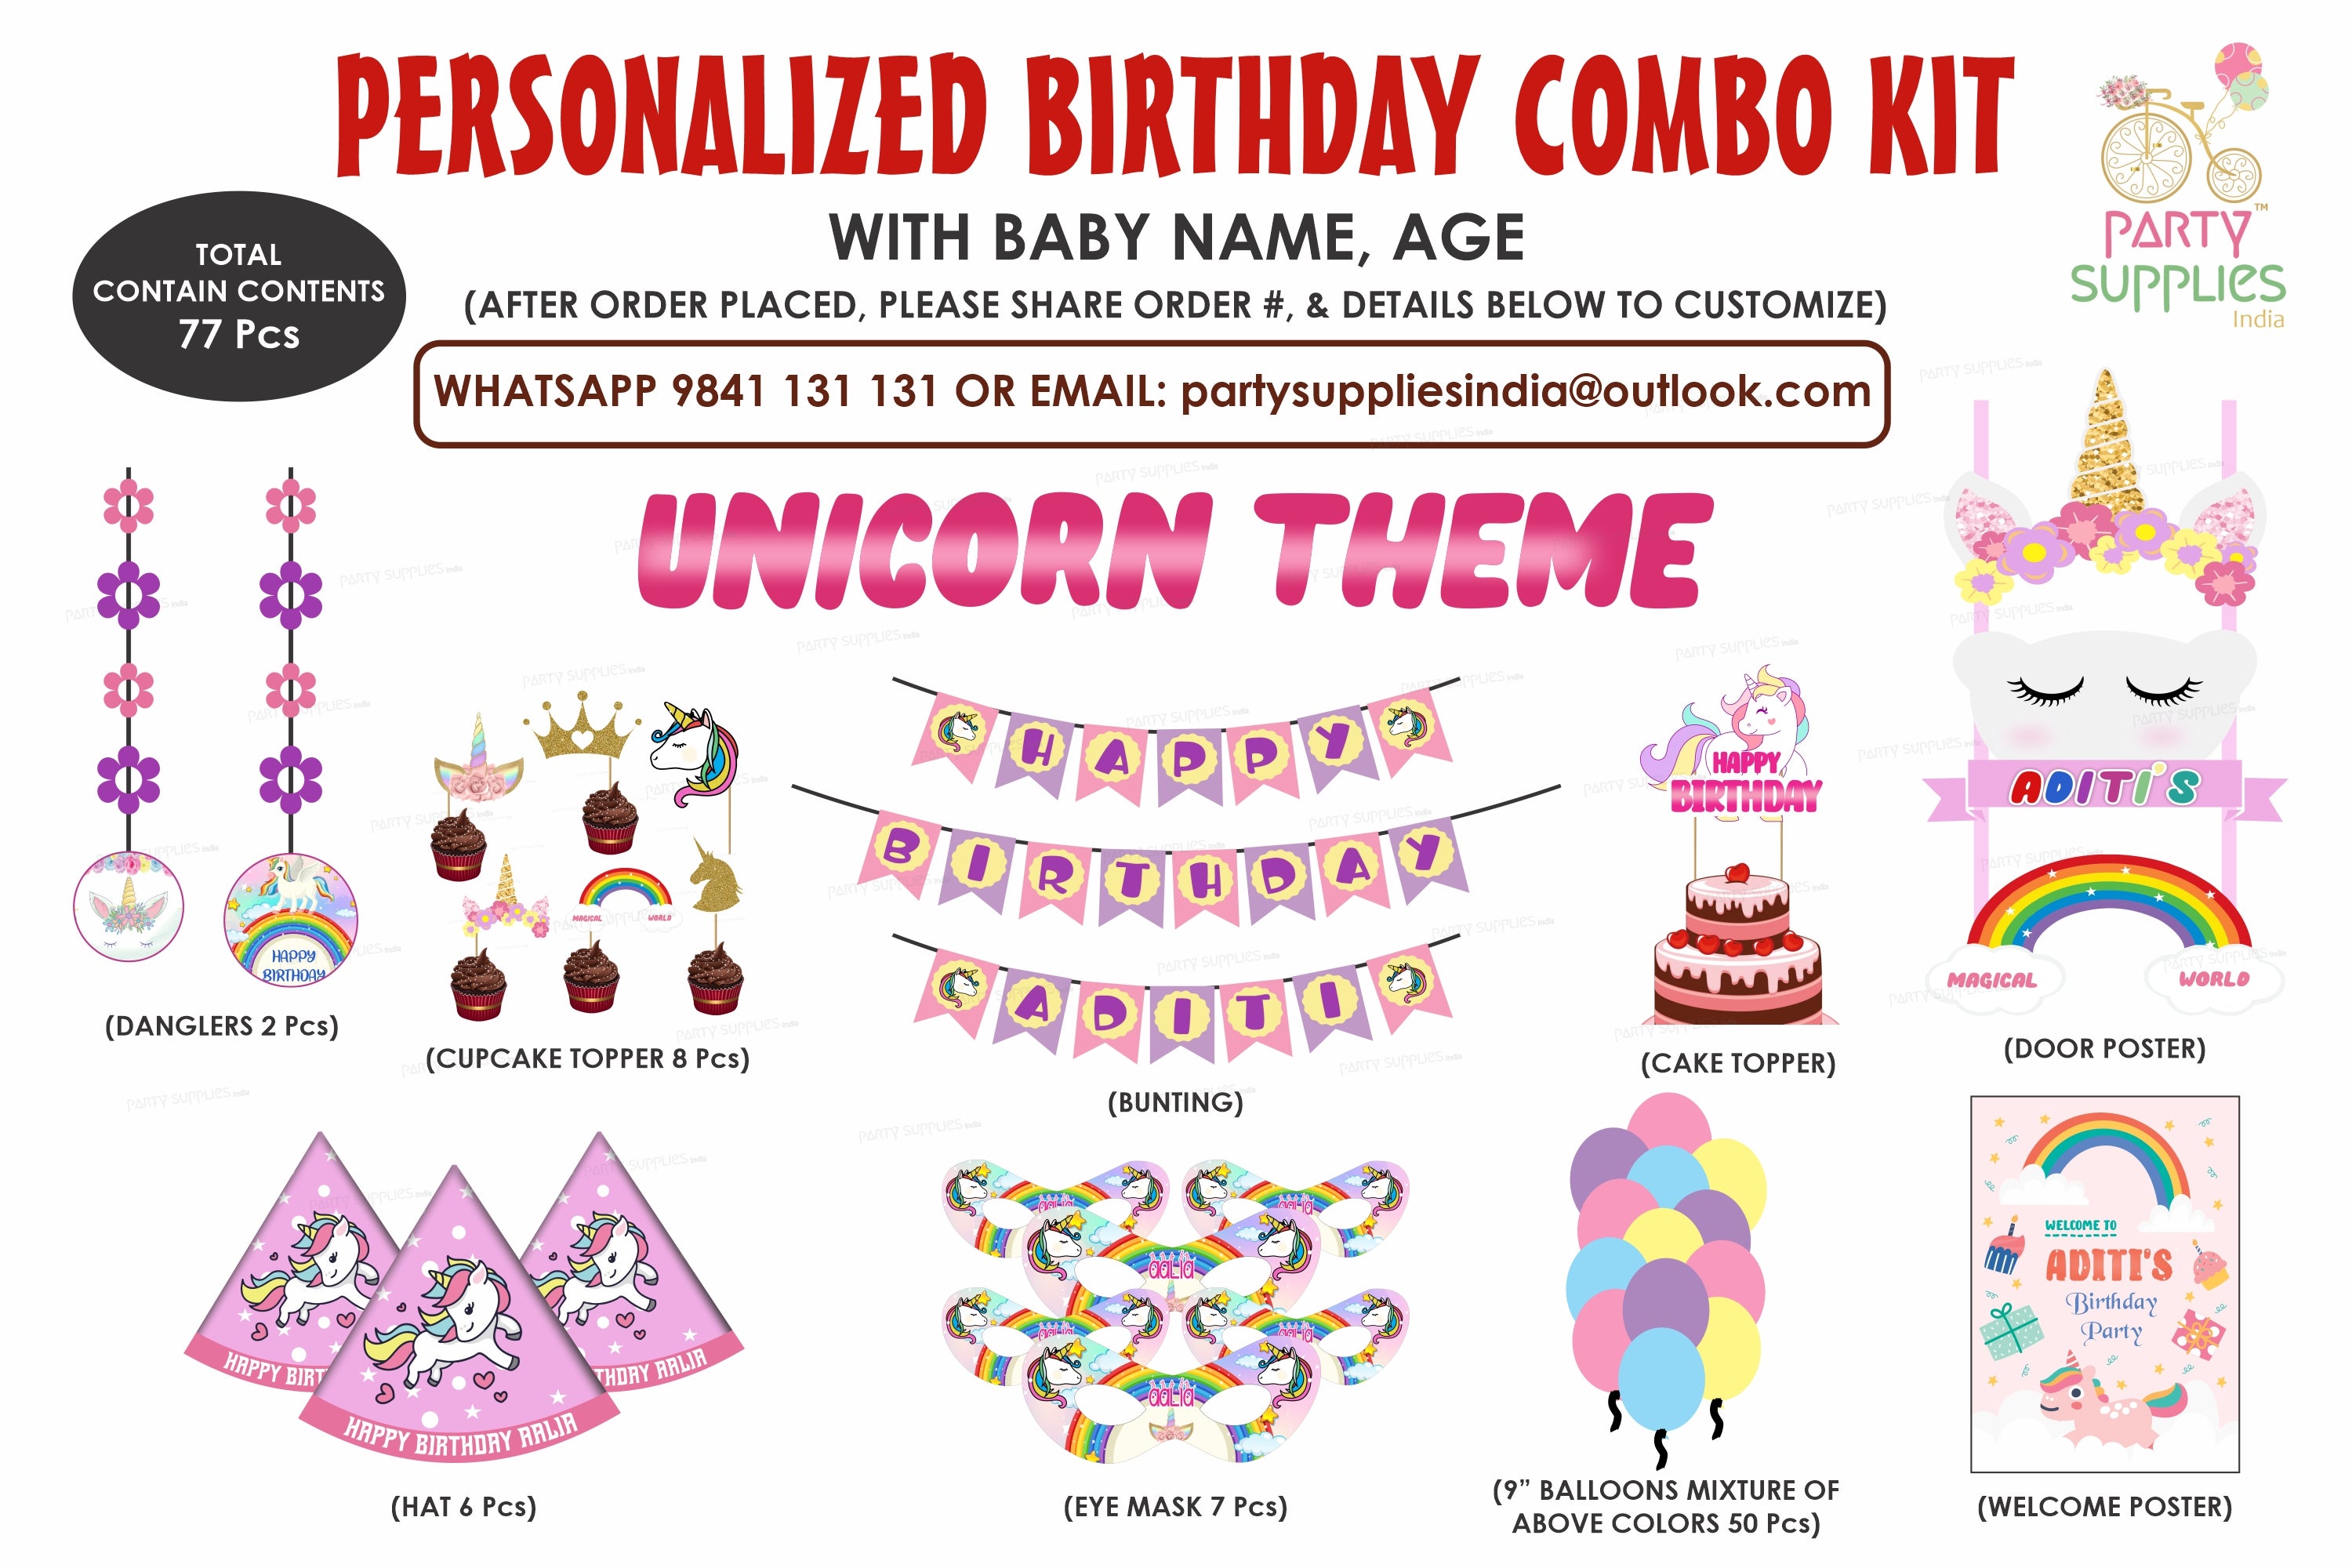 PSI Unicorn Theme Preferred Kit